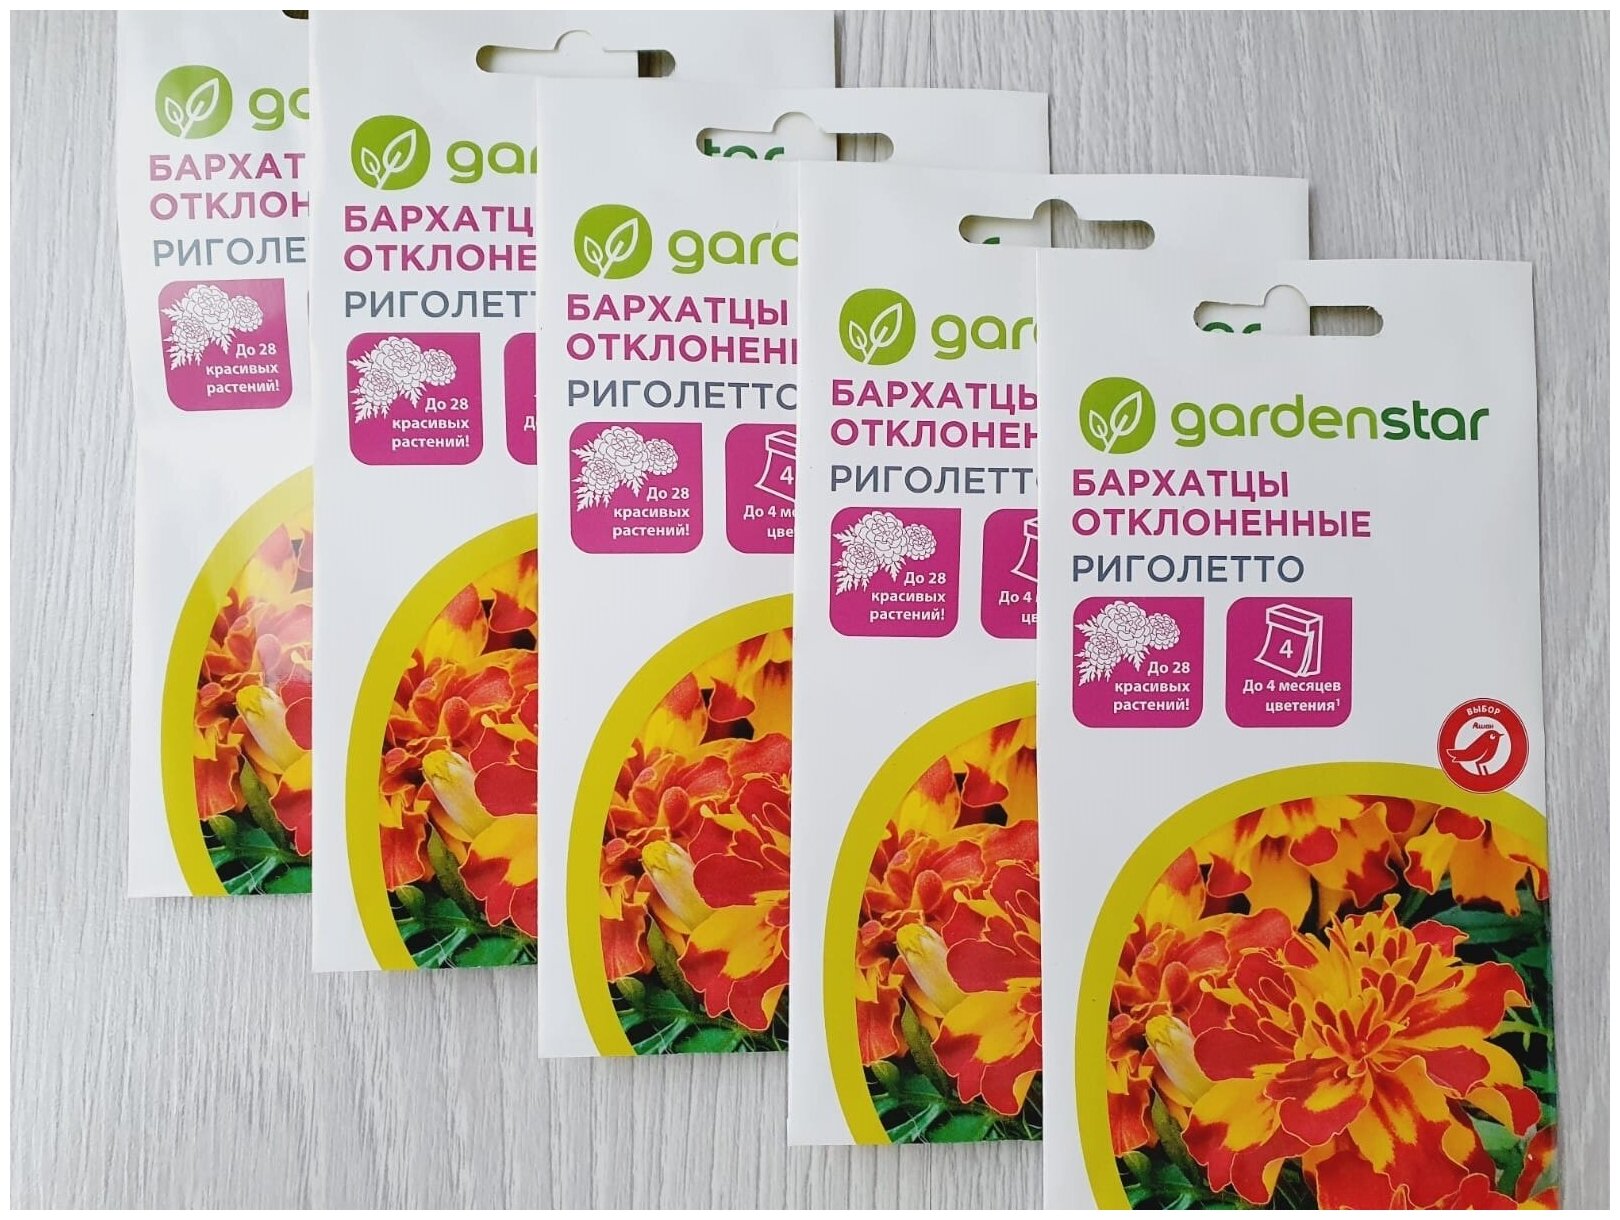 Семена Бархатцев (5 упаковок) бархатцы отклоненные Риголетто семенами на рассаду и цветов для выращивание из семян в домашних условиях